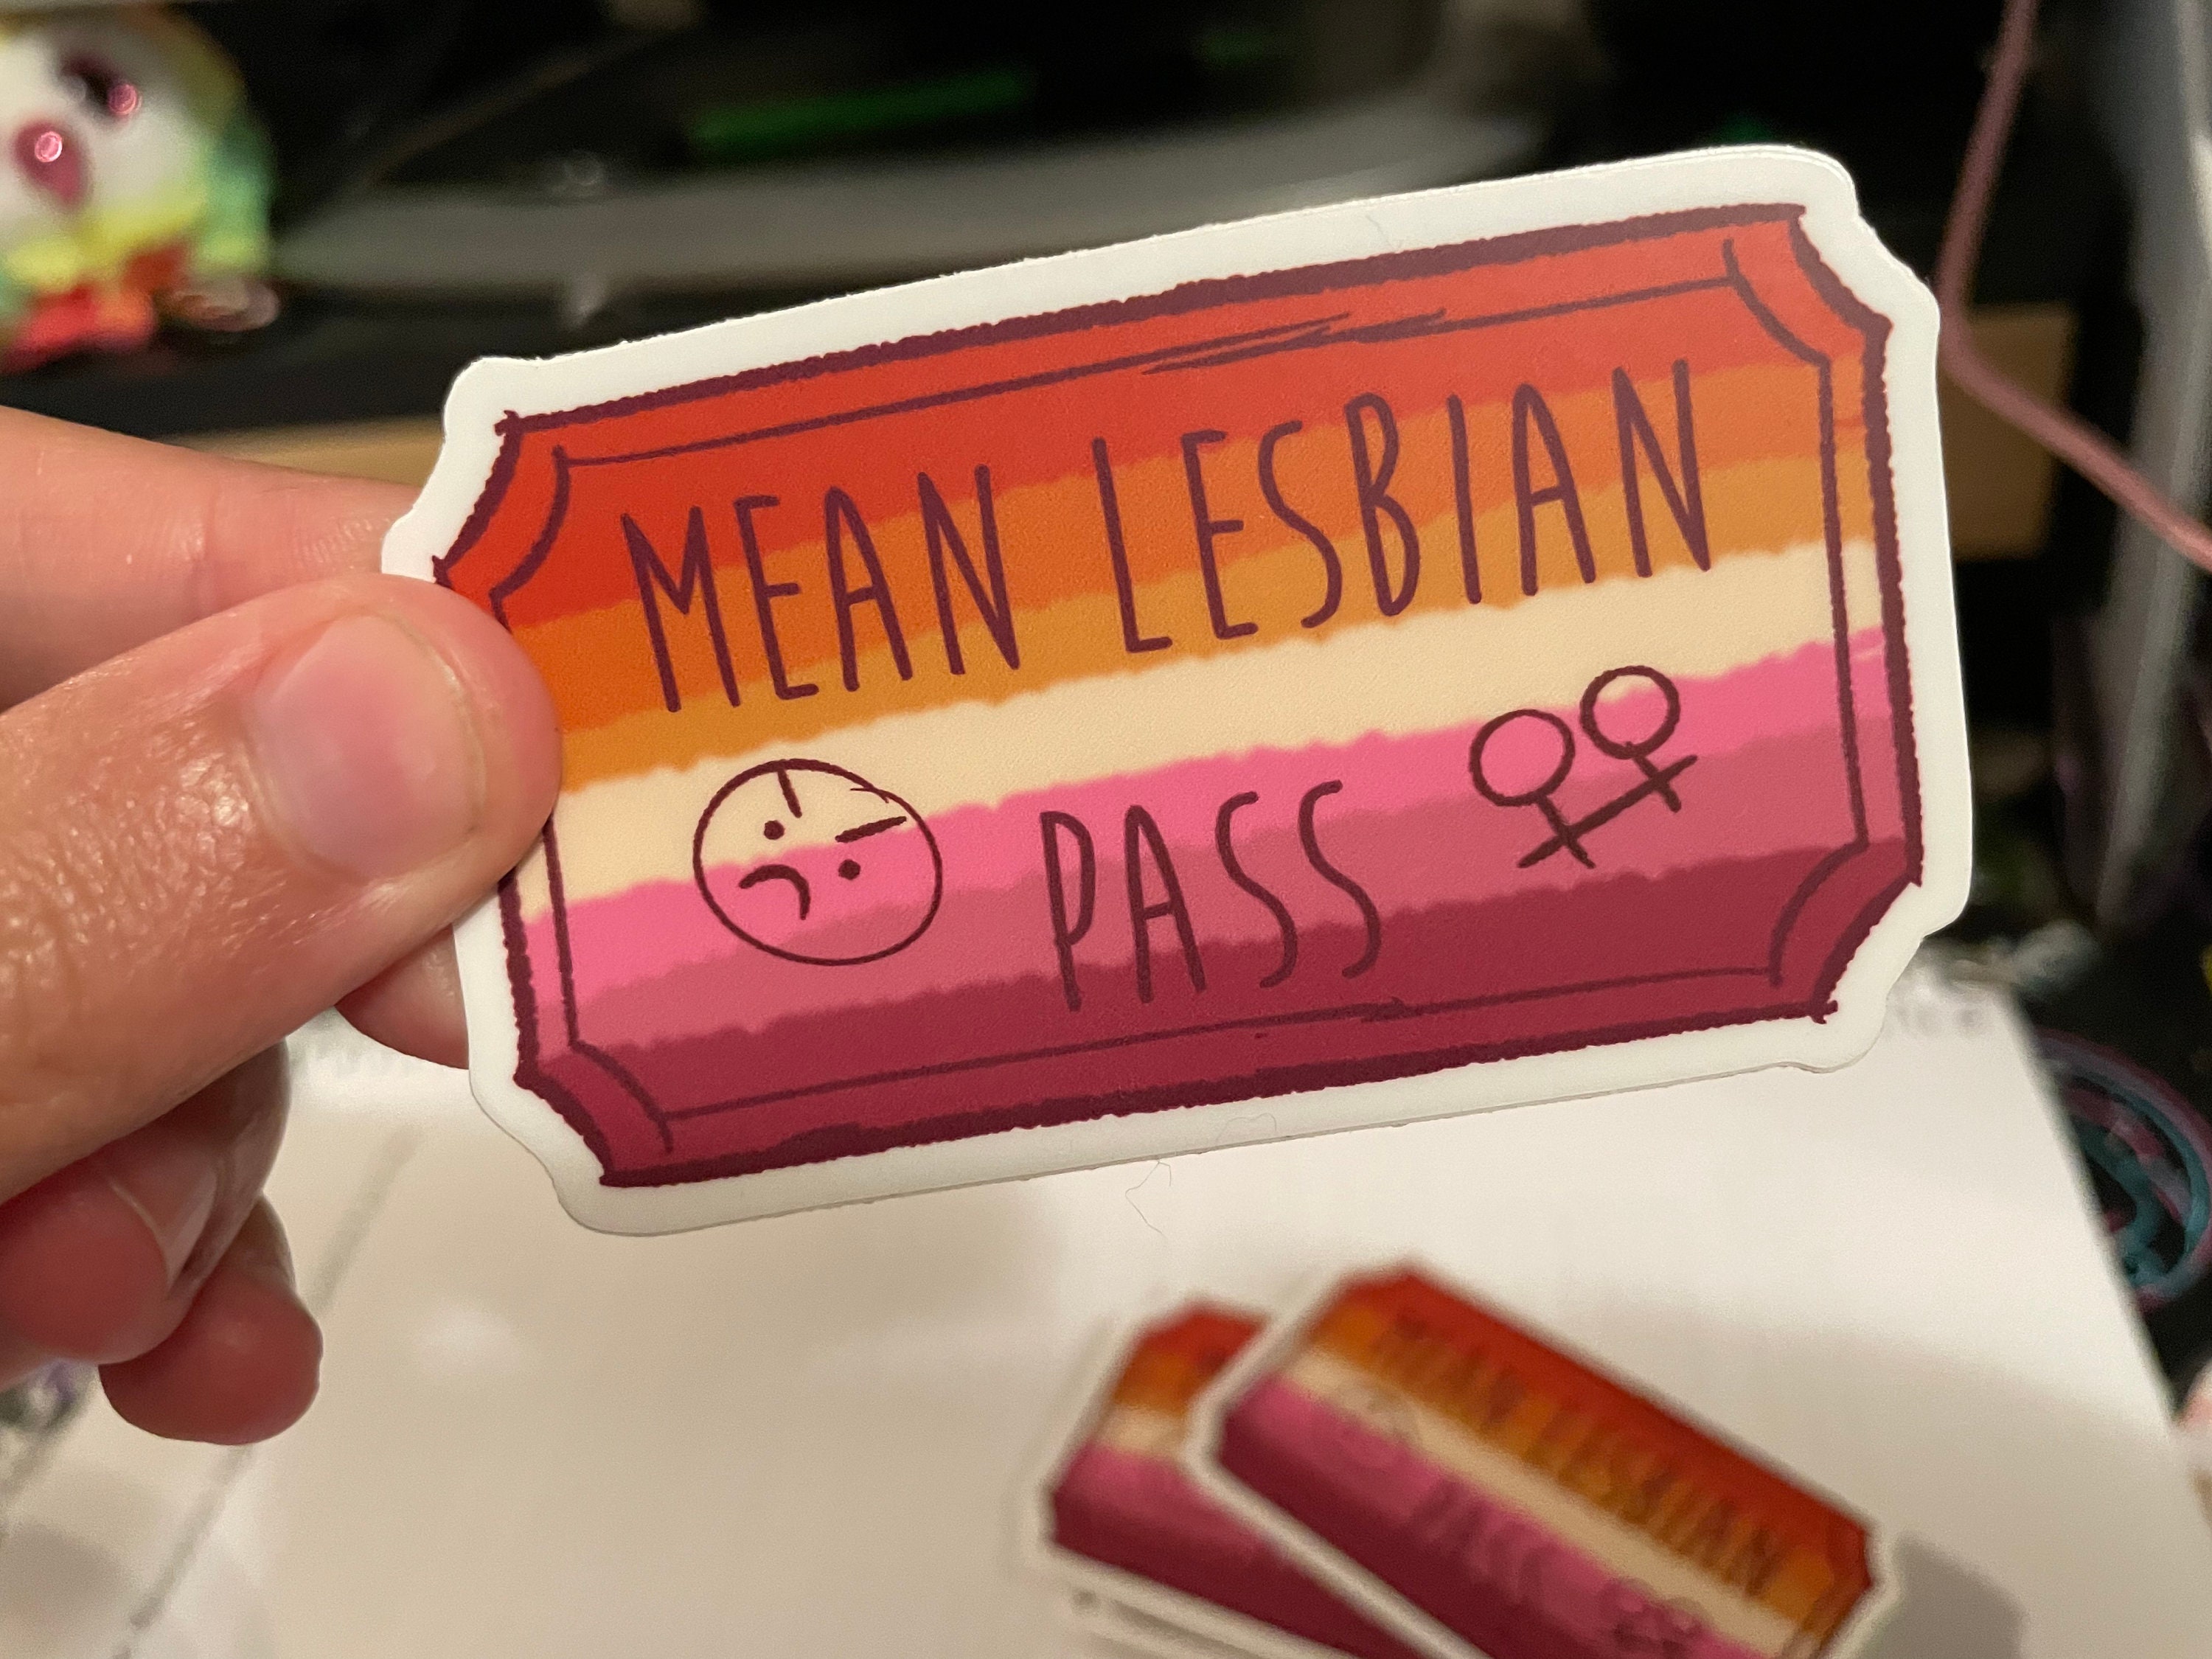 Mean Lesbian